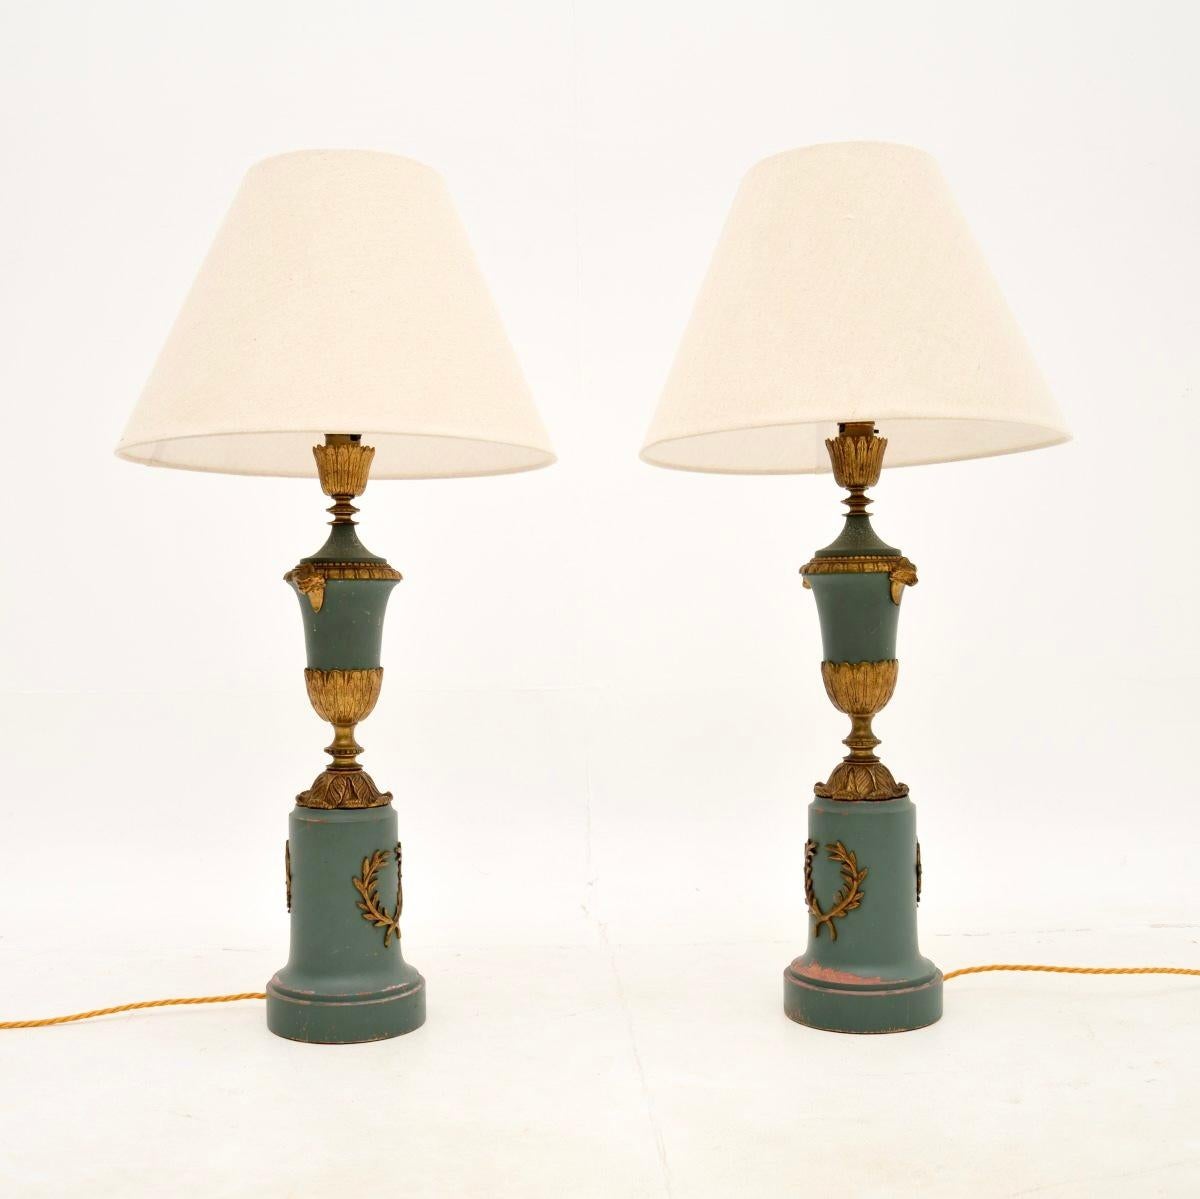 Une belle paire de lampes de table néoclassiques françaises anciennes, datant d'environ la période 1900-1920.

Les bases sont en bois massif tourné, les sections supérieures en forme d'urne sont en métal et le tout est fini dans une couleur bleu